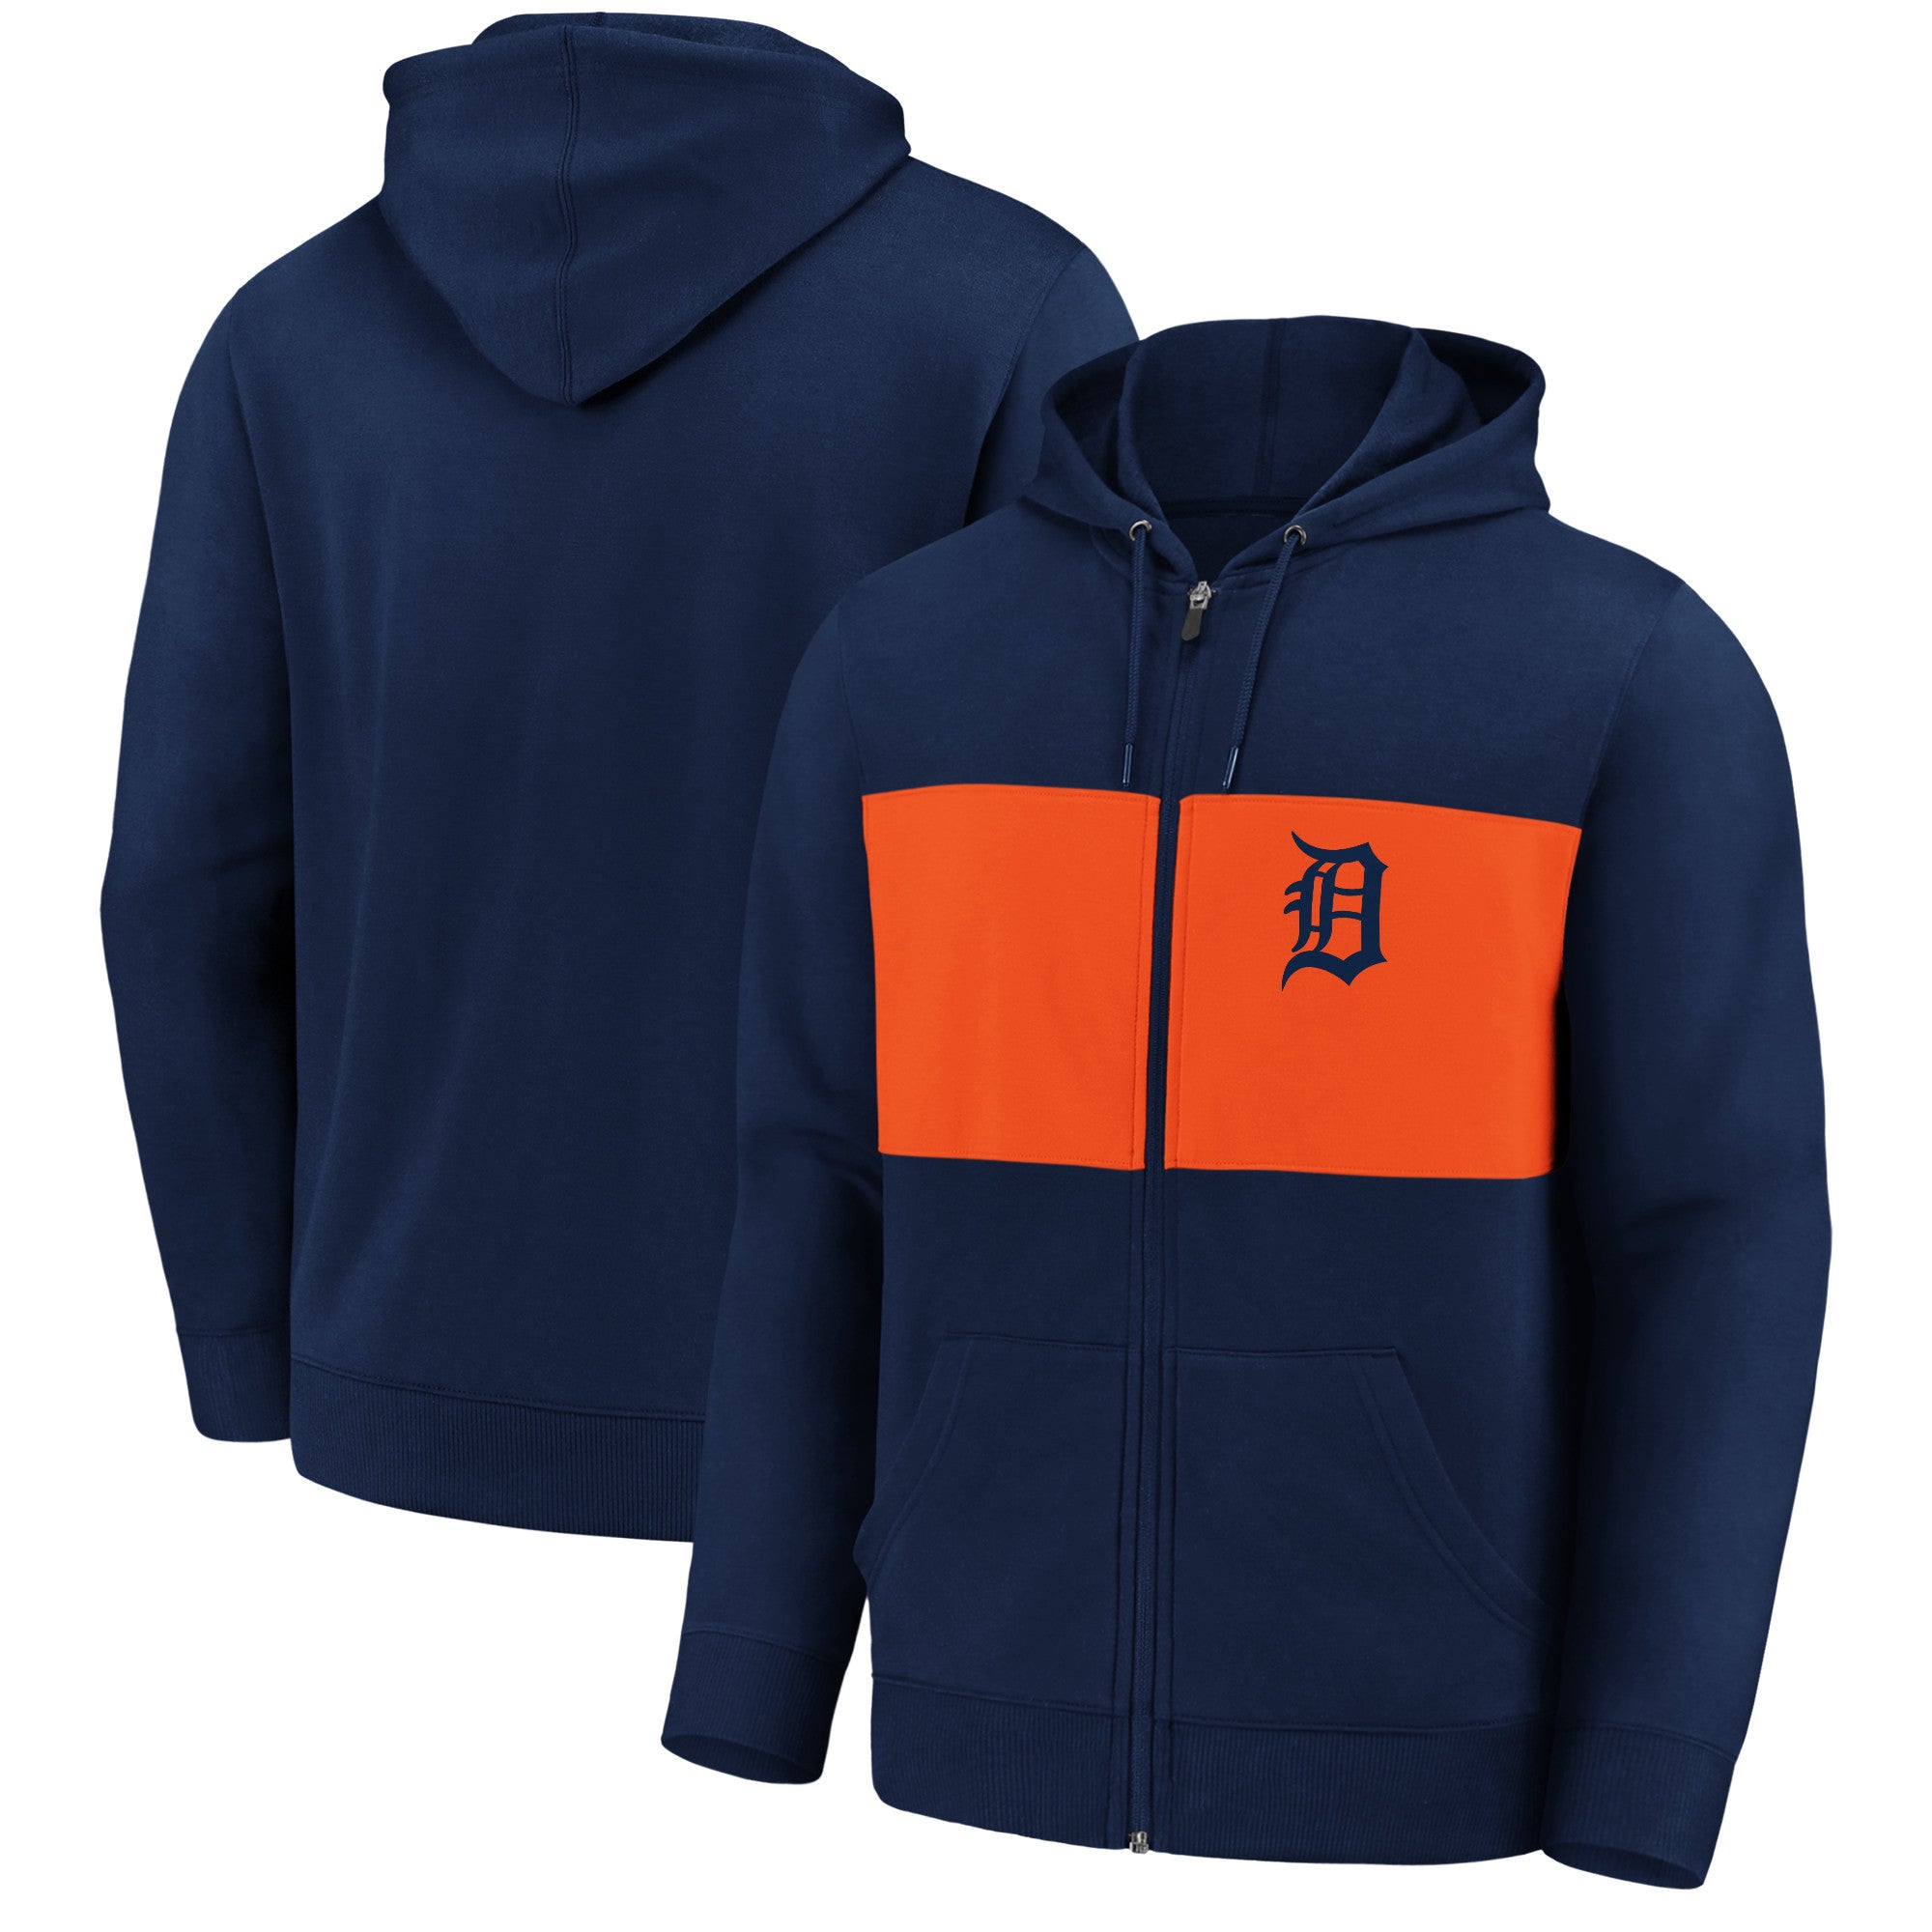 Fanatics Tigers Team Twill Full-Zip Hoodie Jacket - Men's